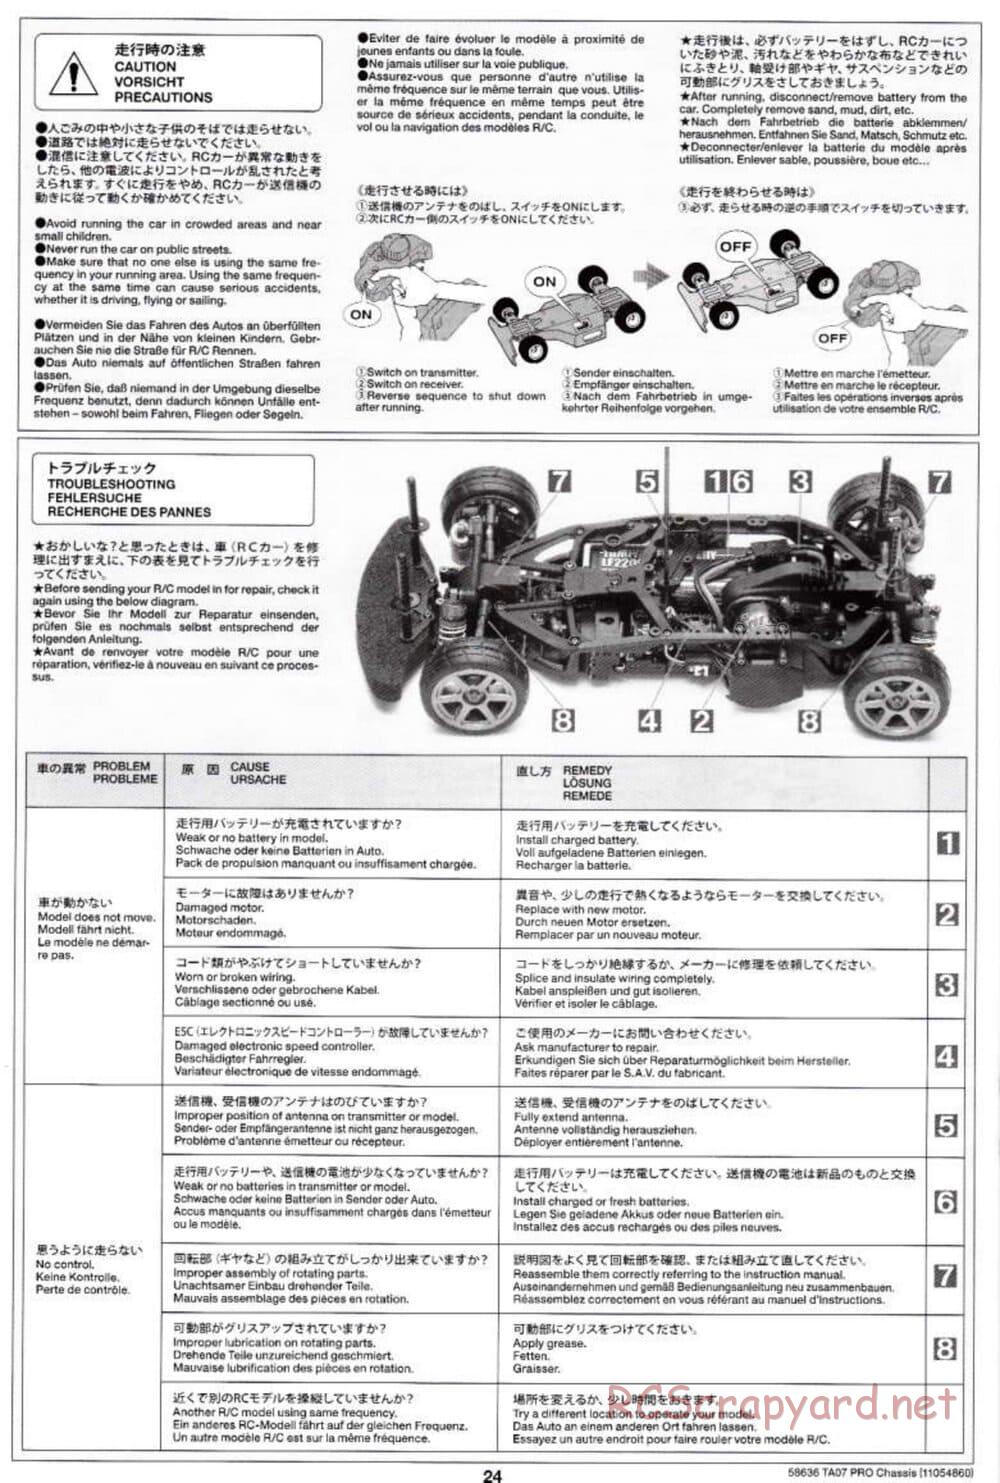 Tamiya - TA07 Pro Chassis - Manual - Page 24